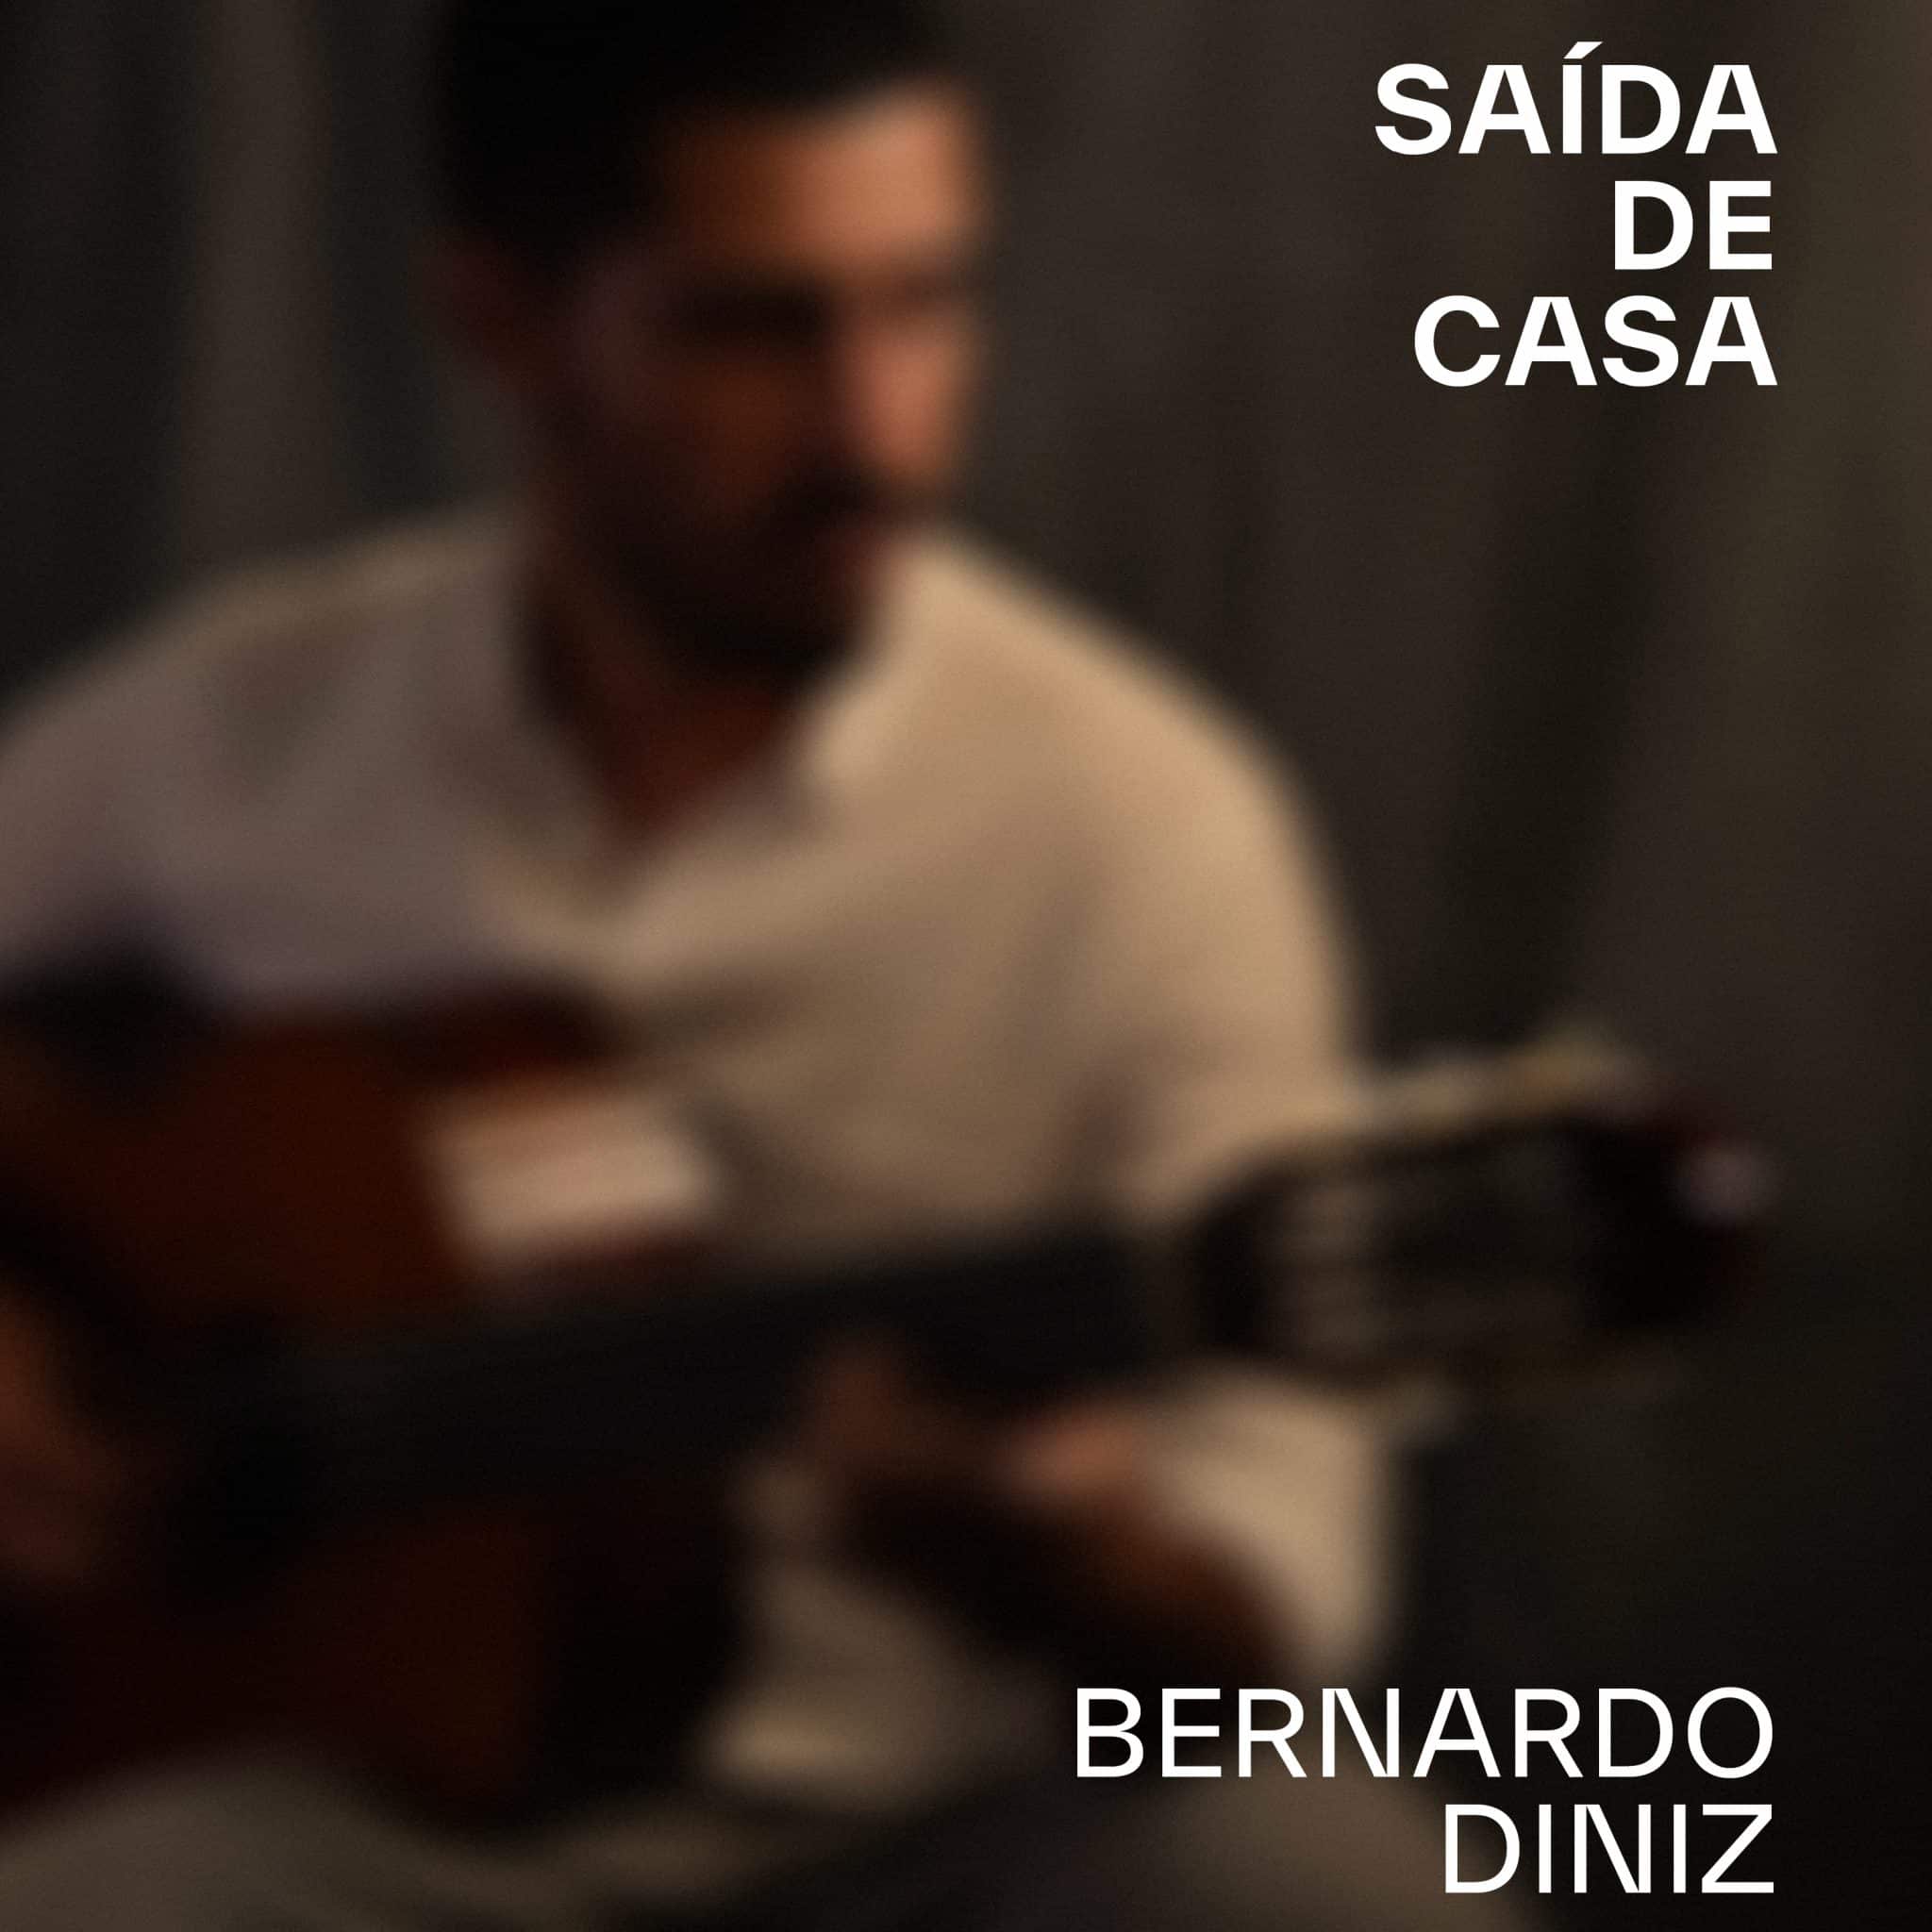 revistaprosaversoearte.com - Bernardo Diniz lança álbum 'Saída de Casa', contendo músicas inéditas em parceria com o poeta e compositor Paulo César Pinheiro